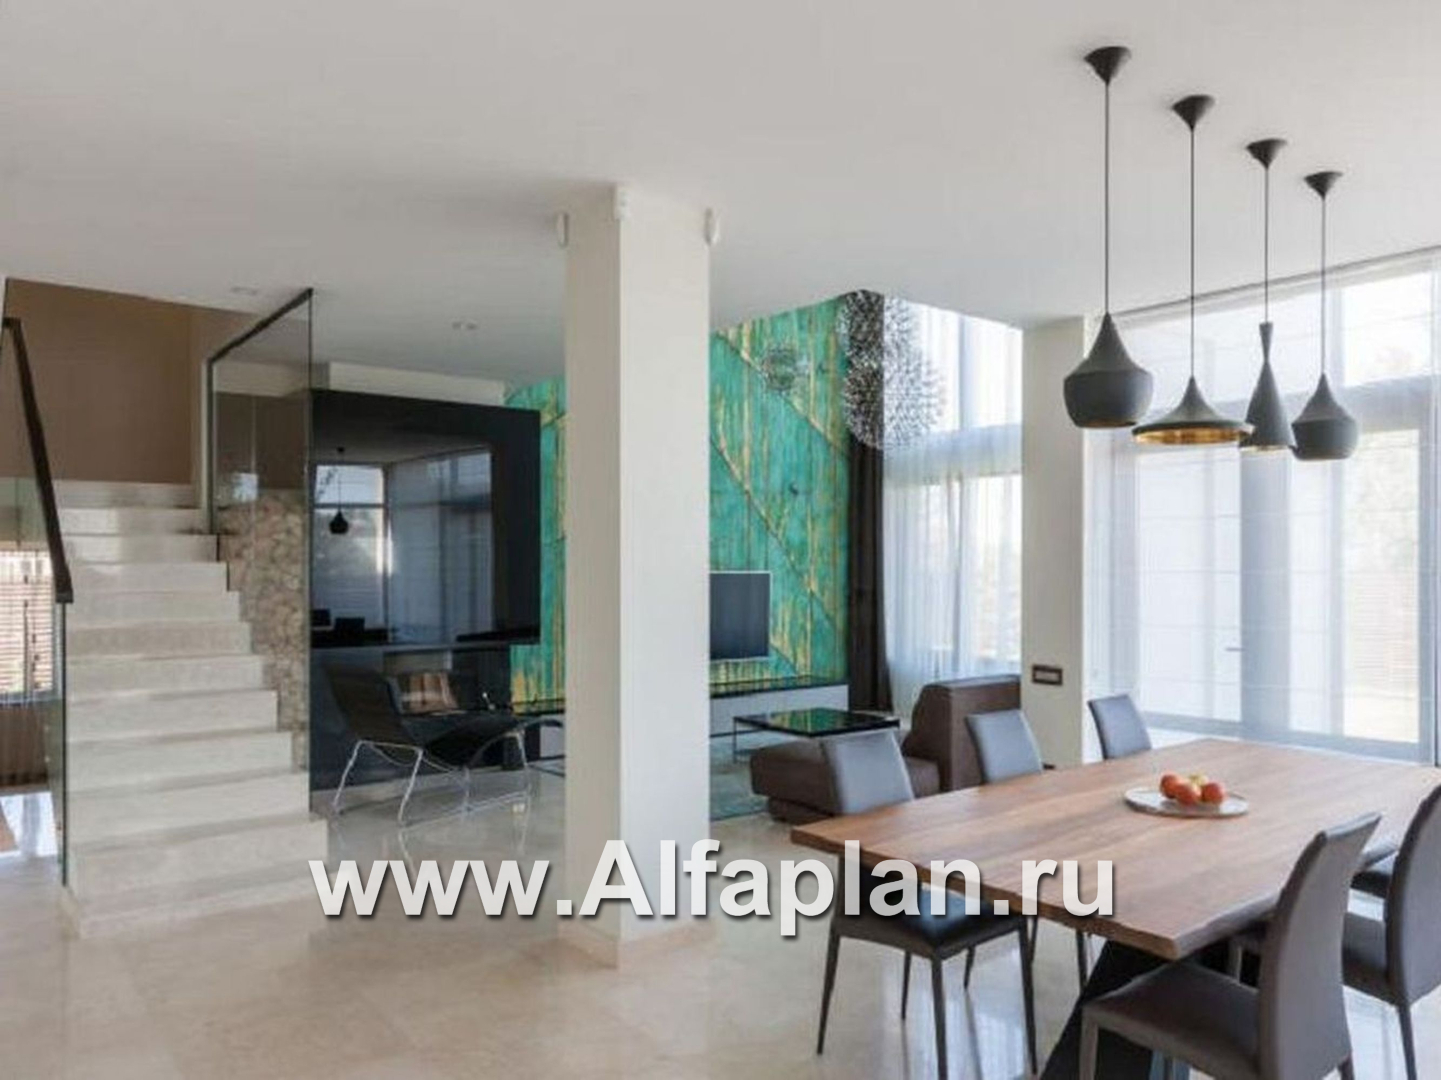 Проекты домов Альфаплан - «Современник» с панорамными окнами - дополнительное изображение №5